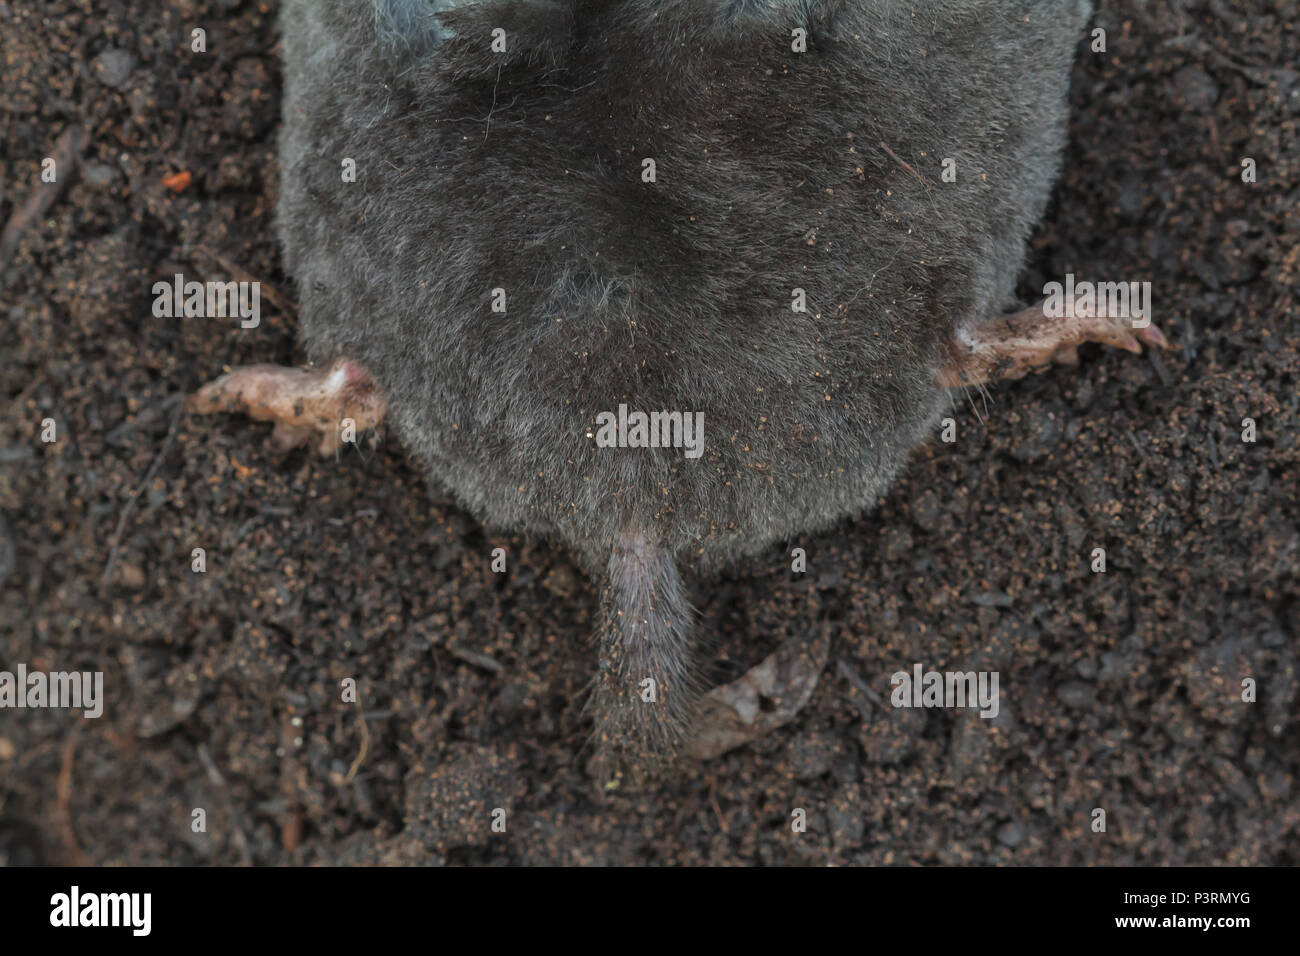 La coda e le zampe posteriori di un Europeo Mole, Talpa europaea, (condizioni controllate) Foto Stock